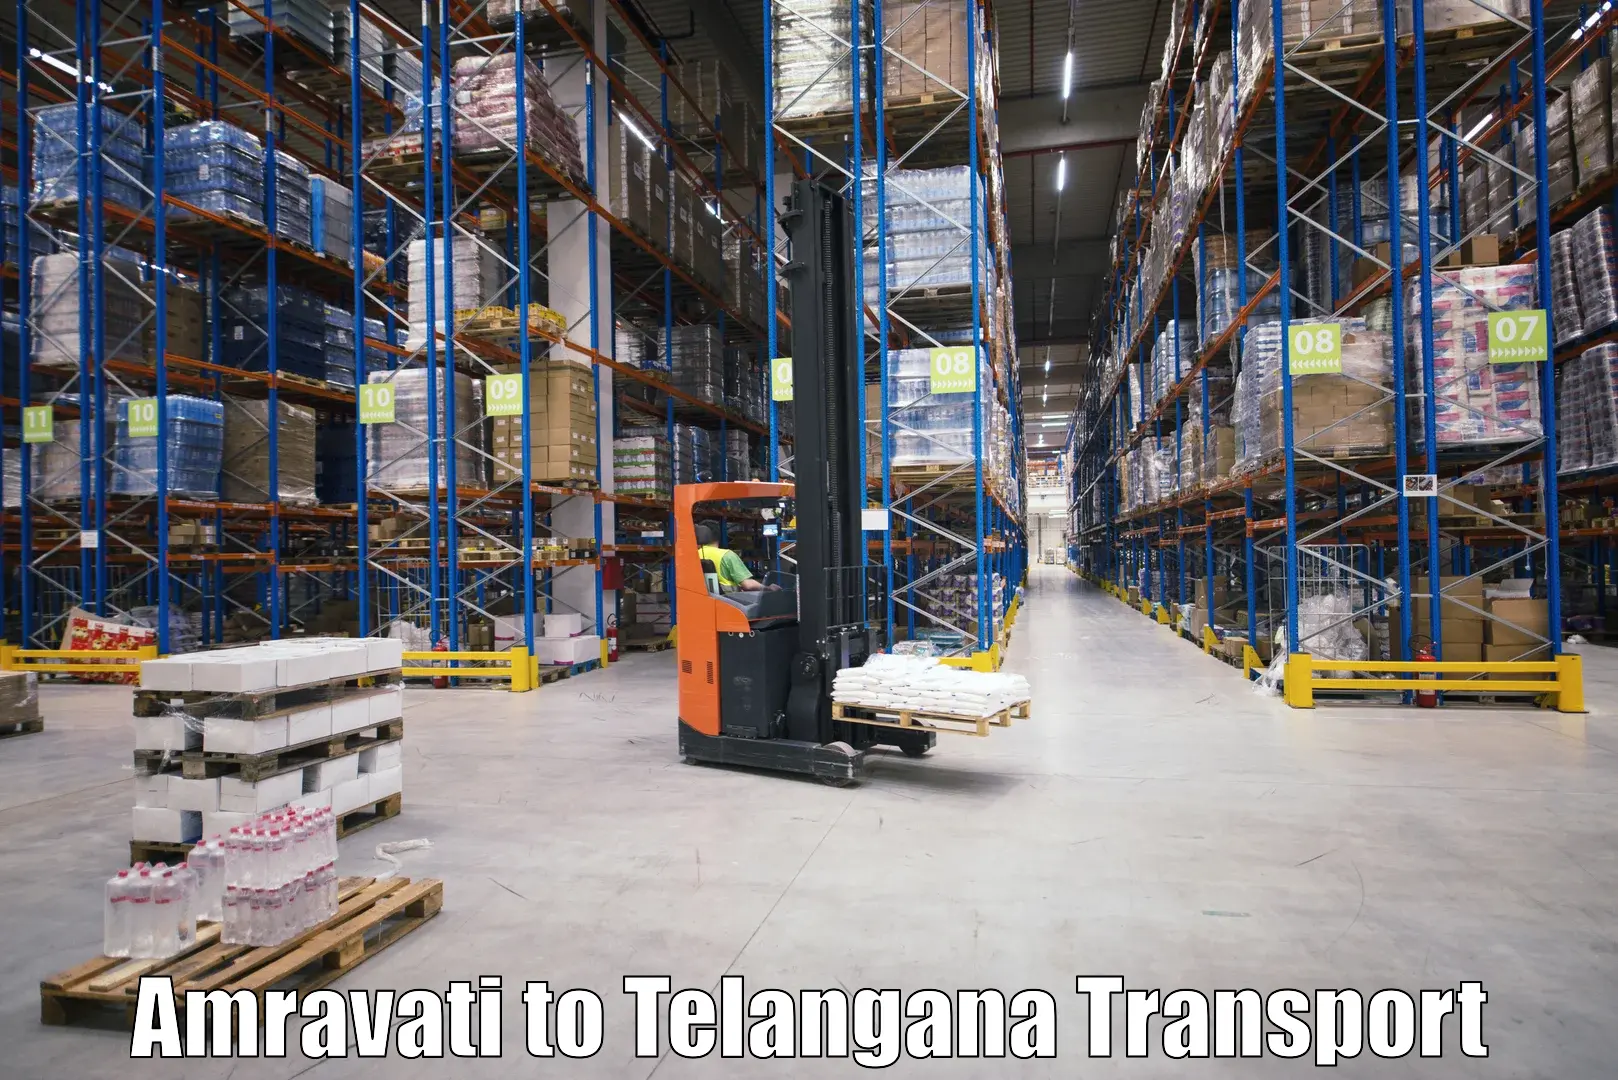 Nationwide transport services Amravati to Ibrahimpatnam